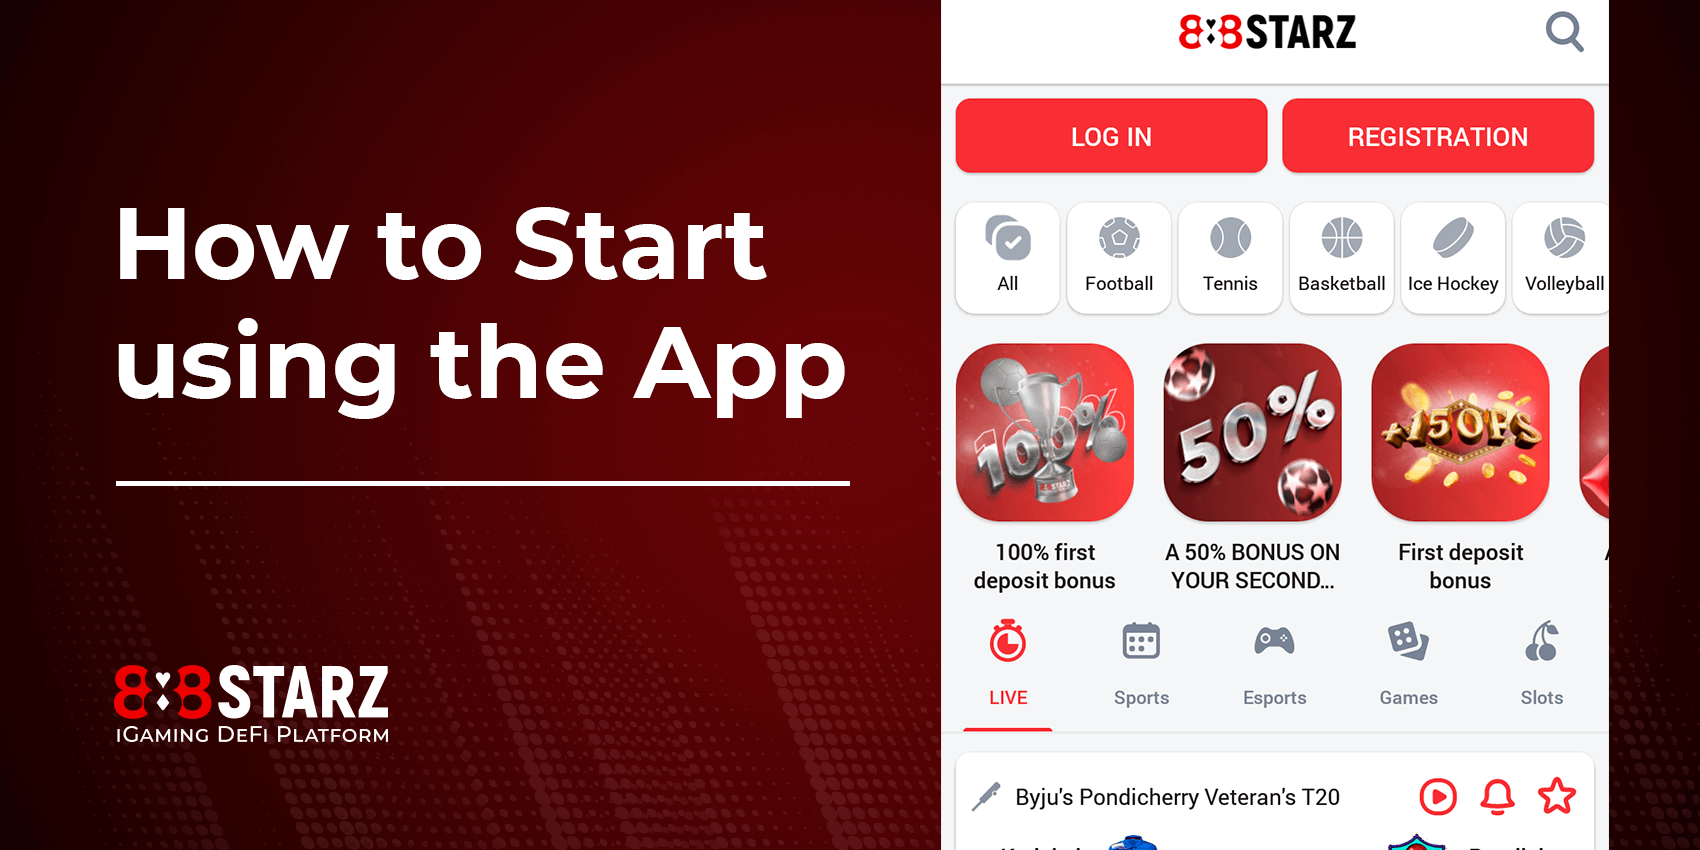 Como começar a usar o aplicativo 888Starz?